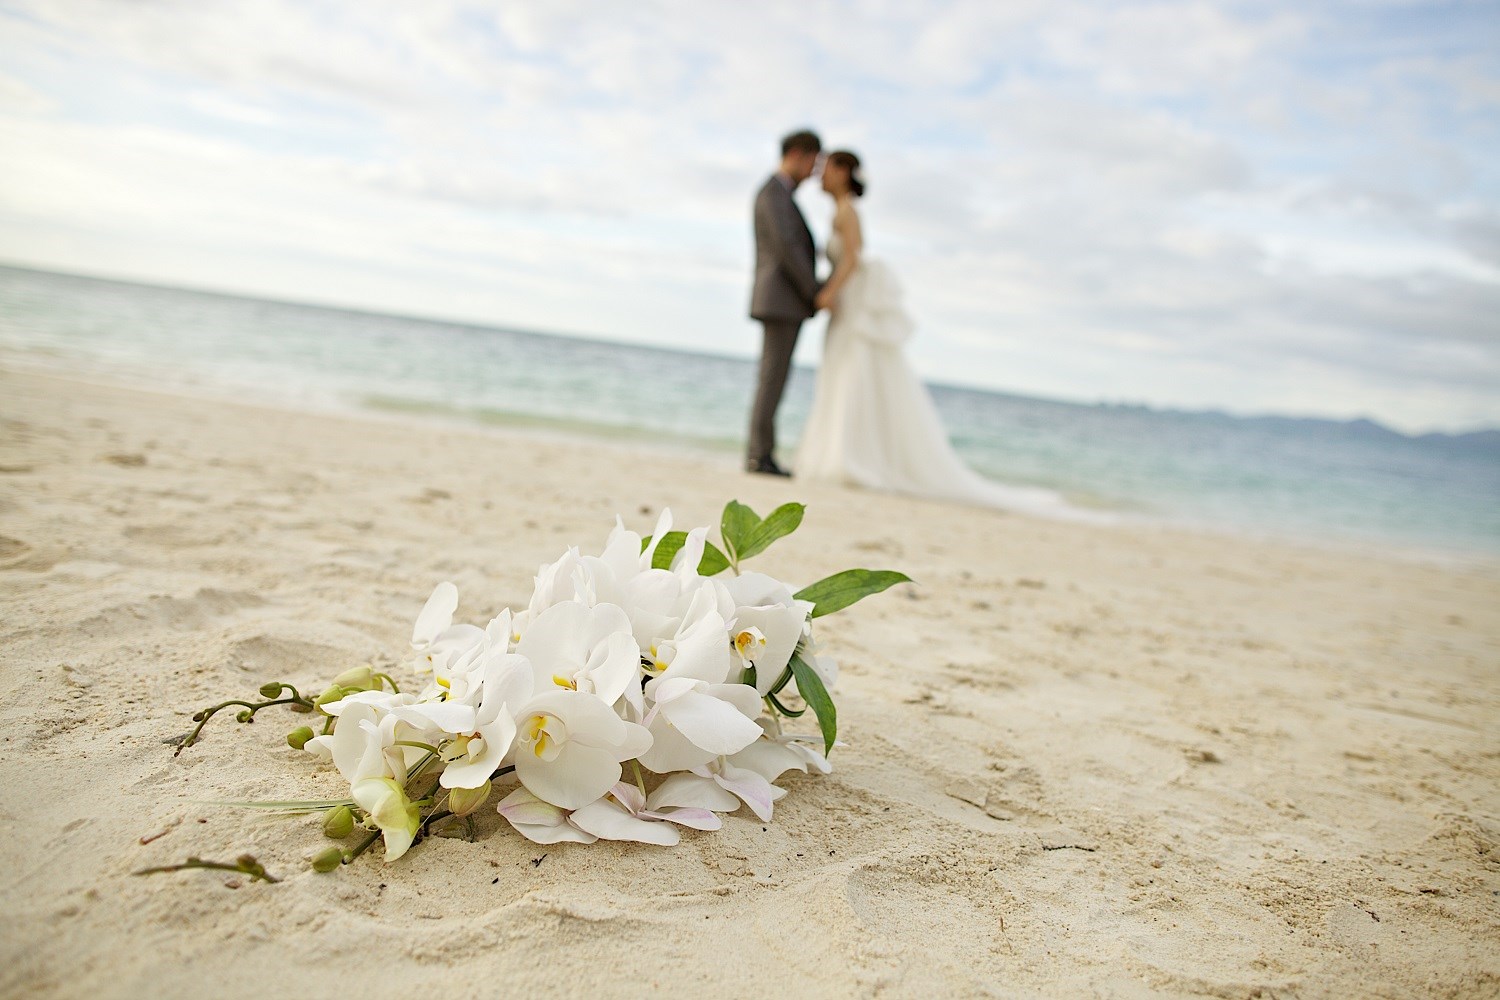 Illustrasjonsbilde av bryllup i utlandet, to personer på en strand